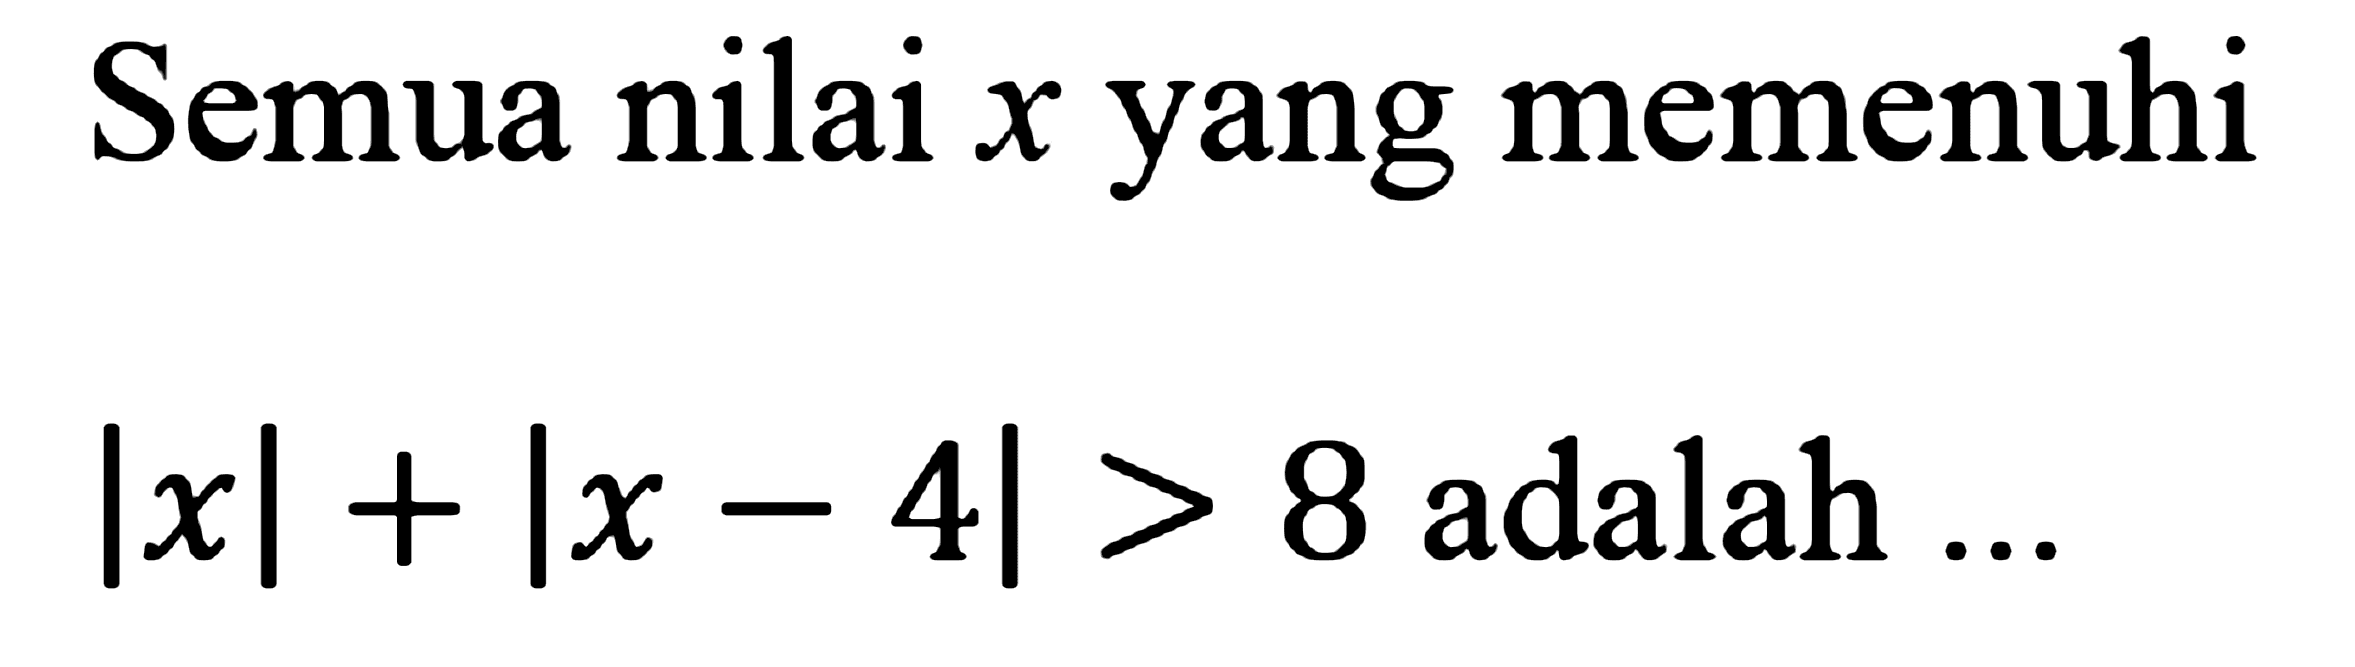 Semua nilai x yang memenuhi Ixl + Ix - 4| > 8 adalah...